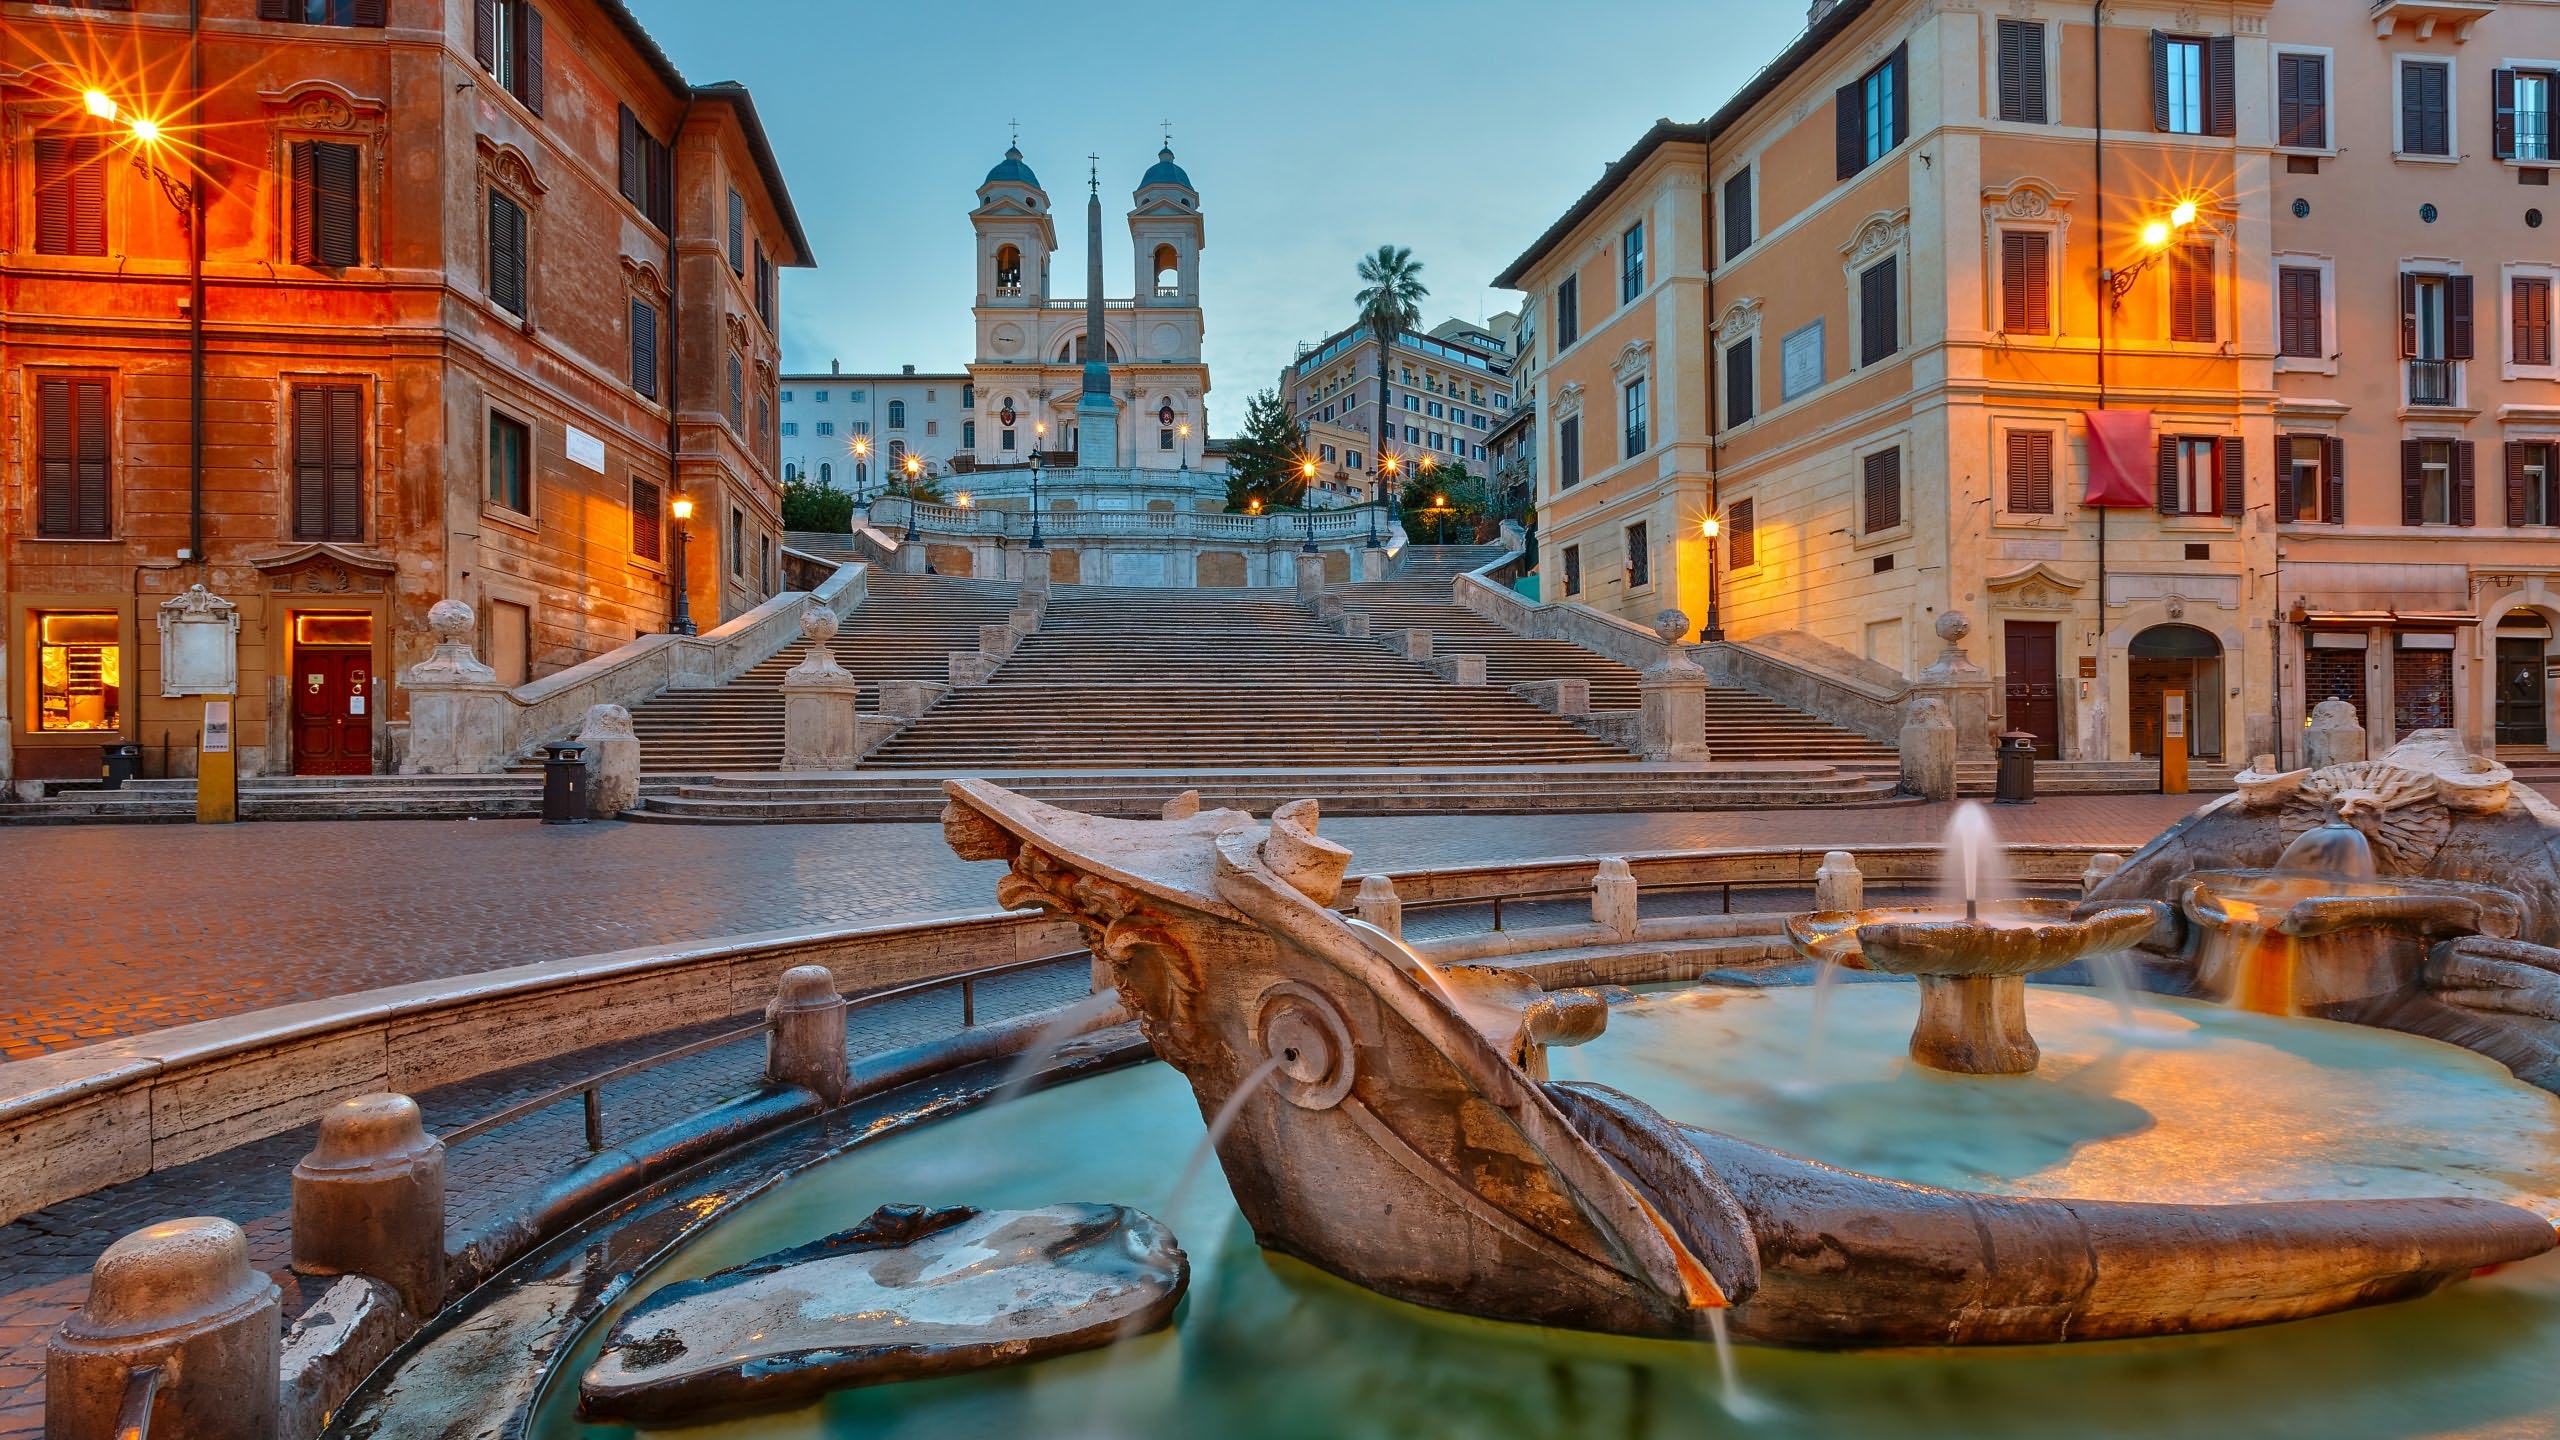 Barcaccia Fountain, Travels, Vatican Tour, Colosseum tour, 2560x1440 HD Desktop